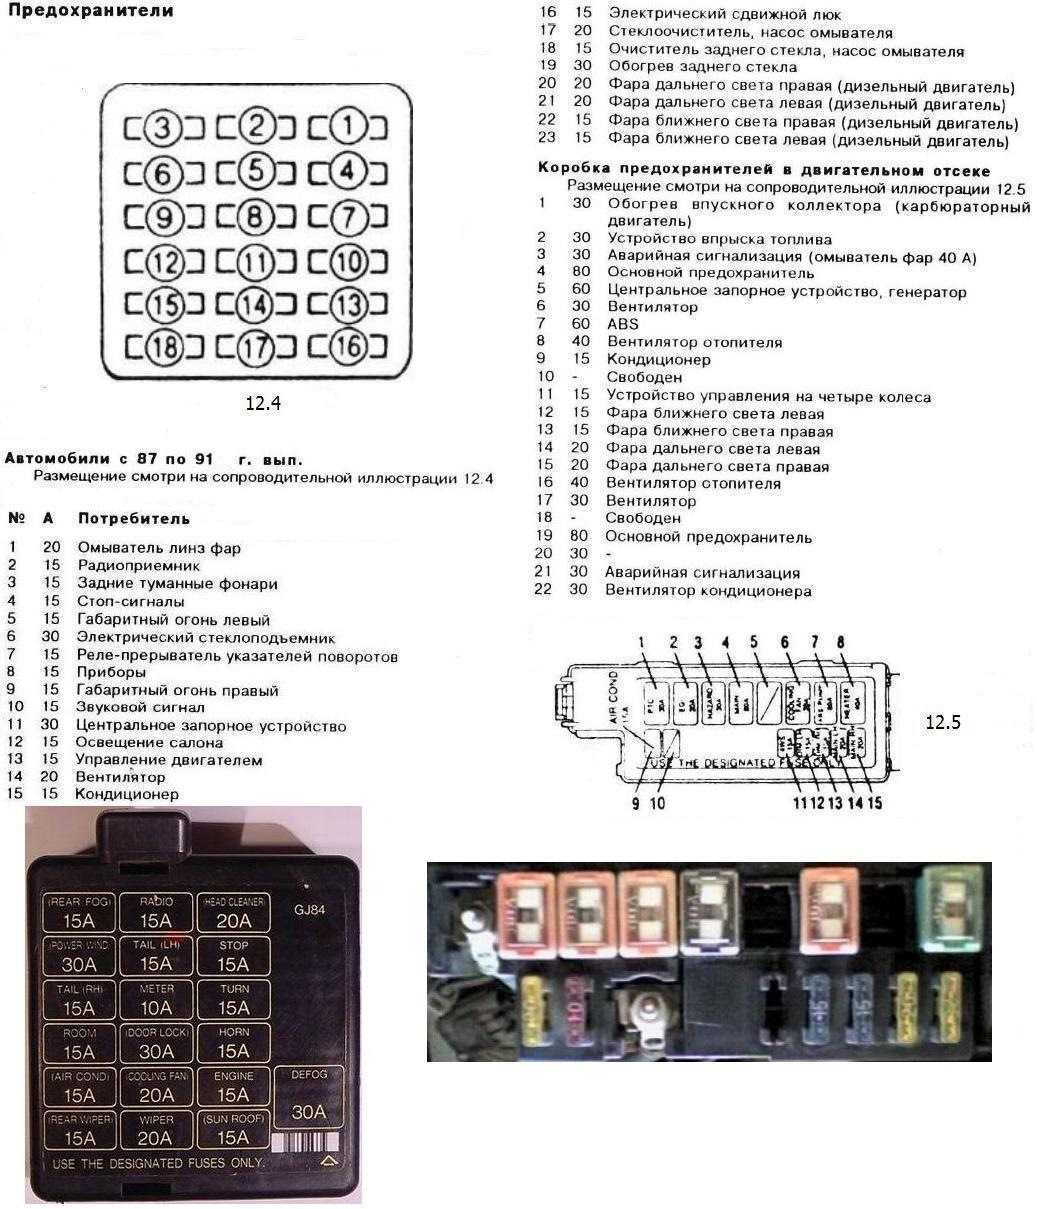 Предохранители mazda 626 gf и реле с расшифровкой и схемами блоков